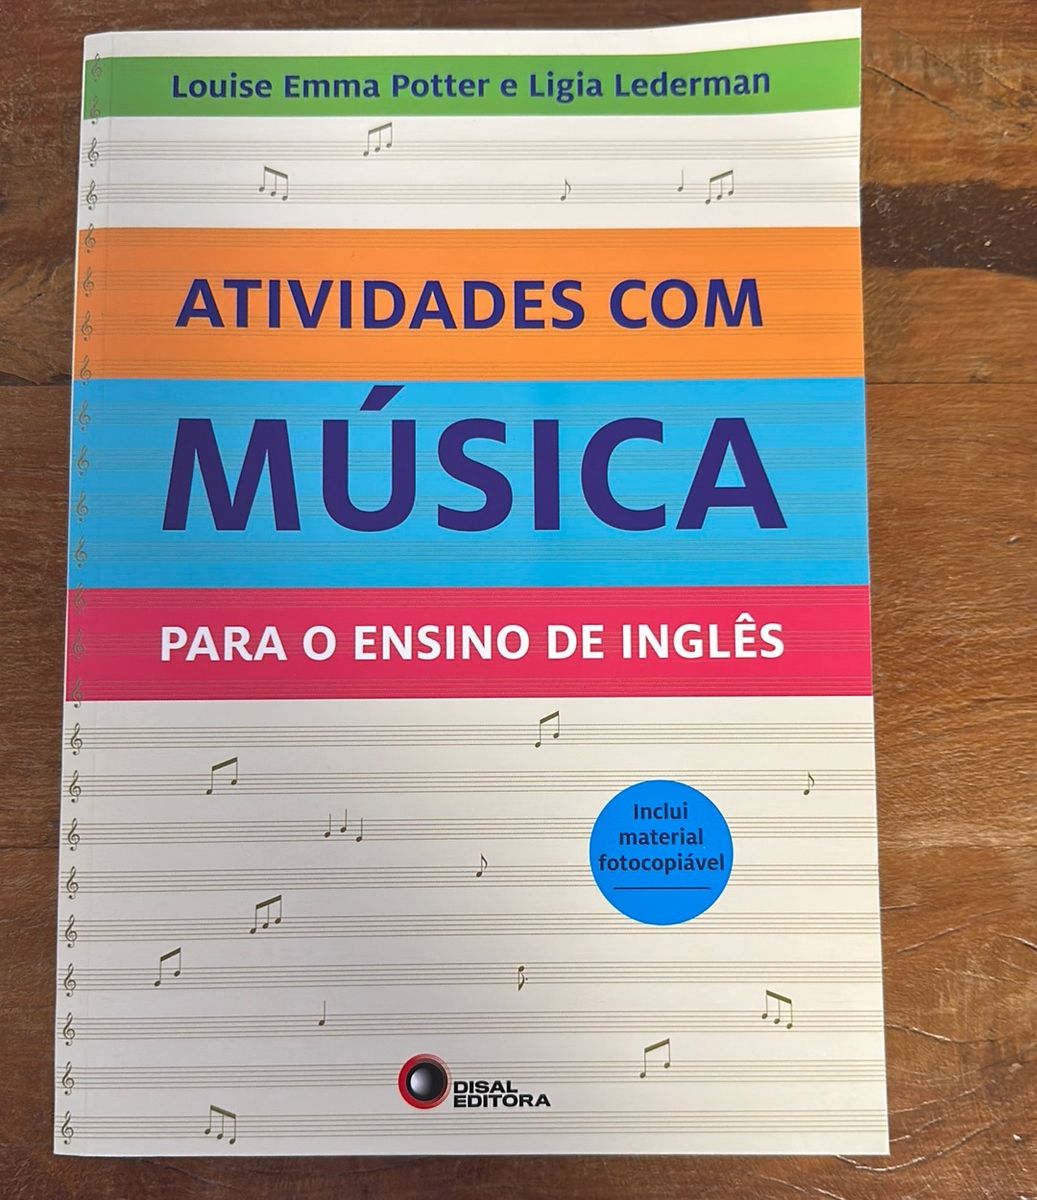 e-Book - Como Aprender Inglês com Música!